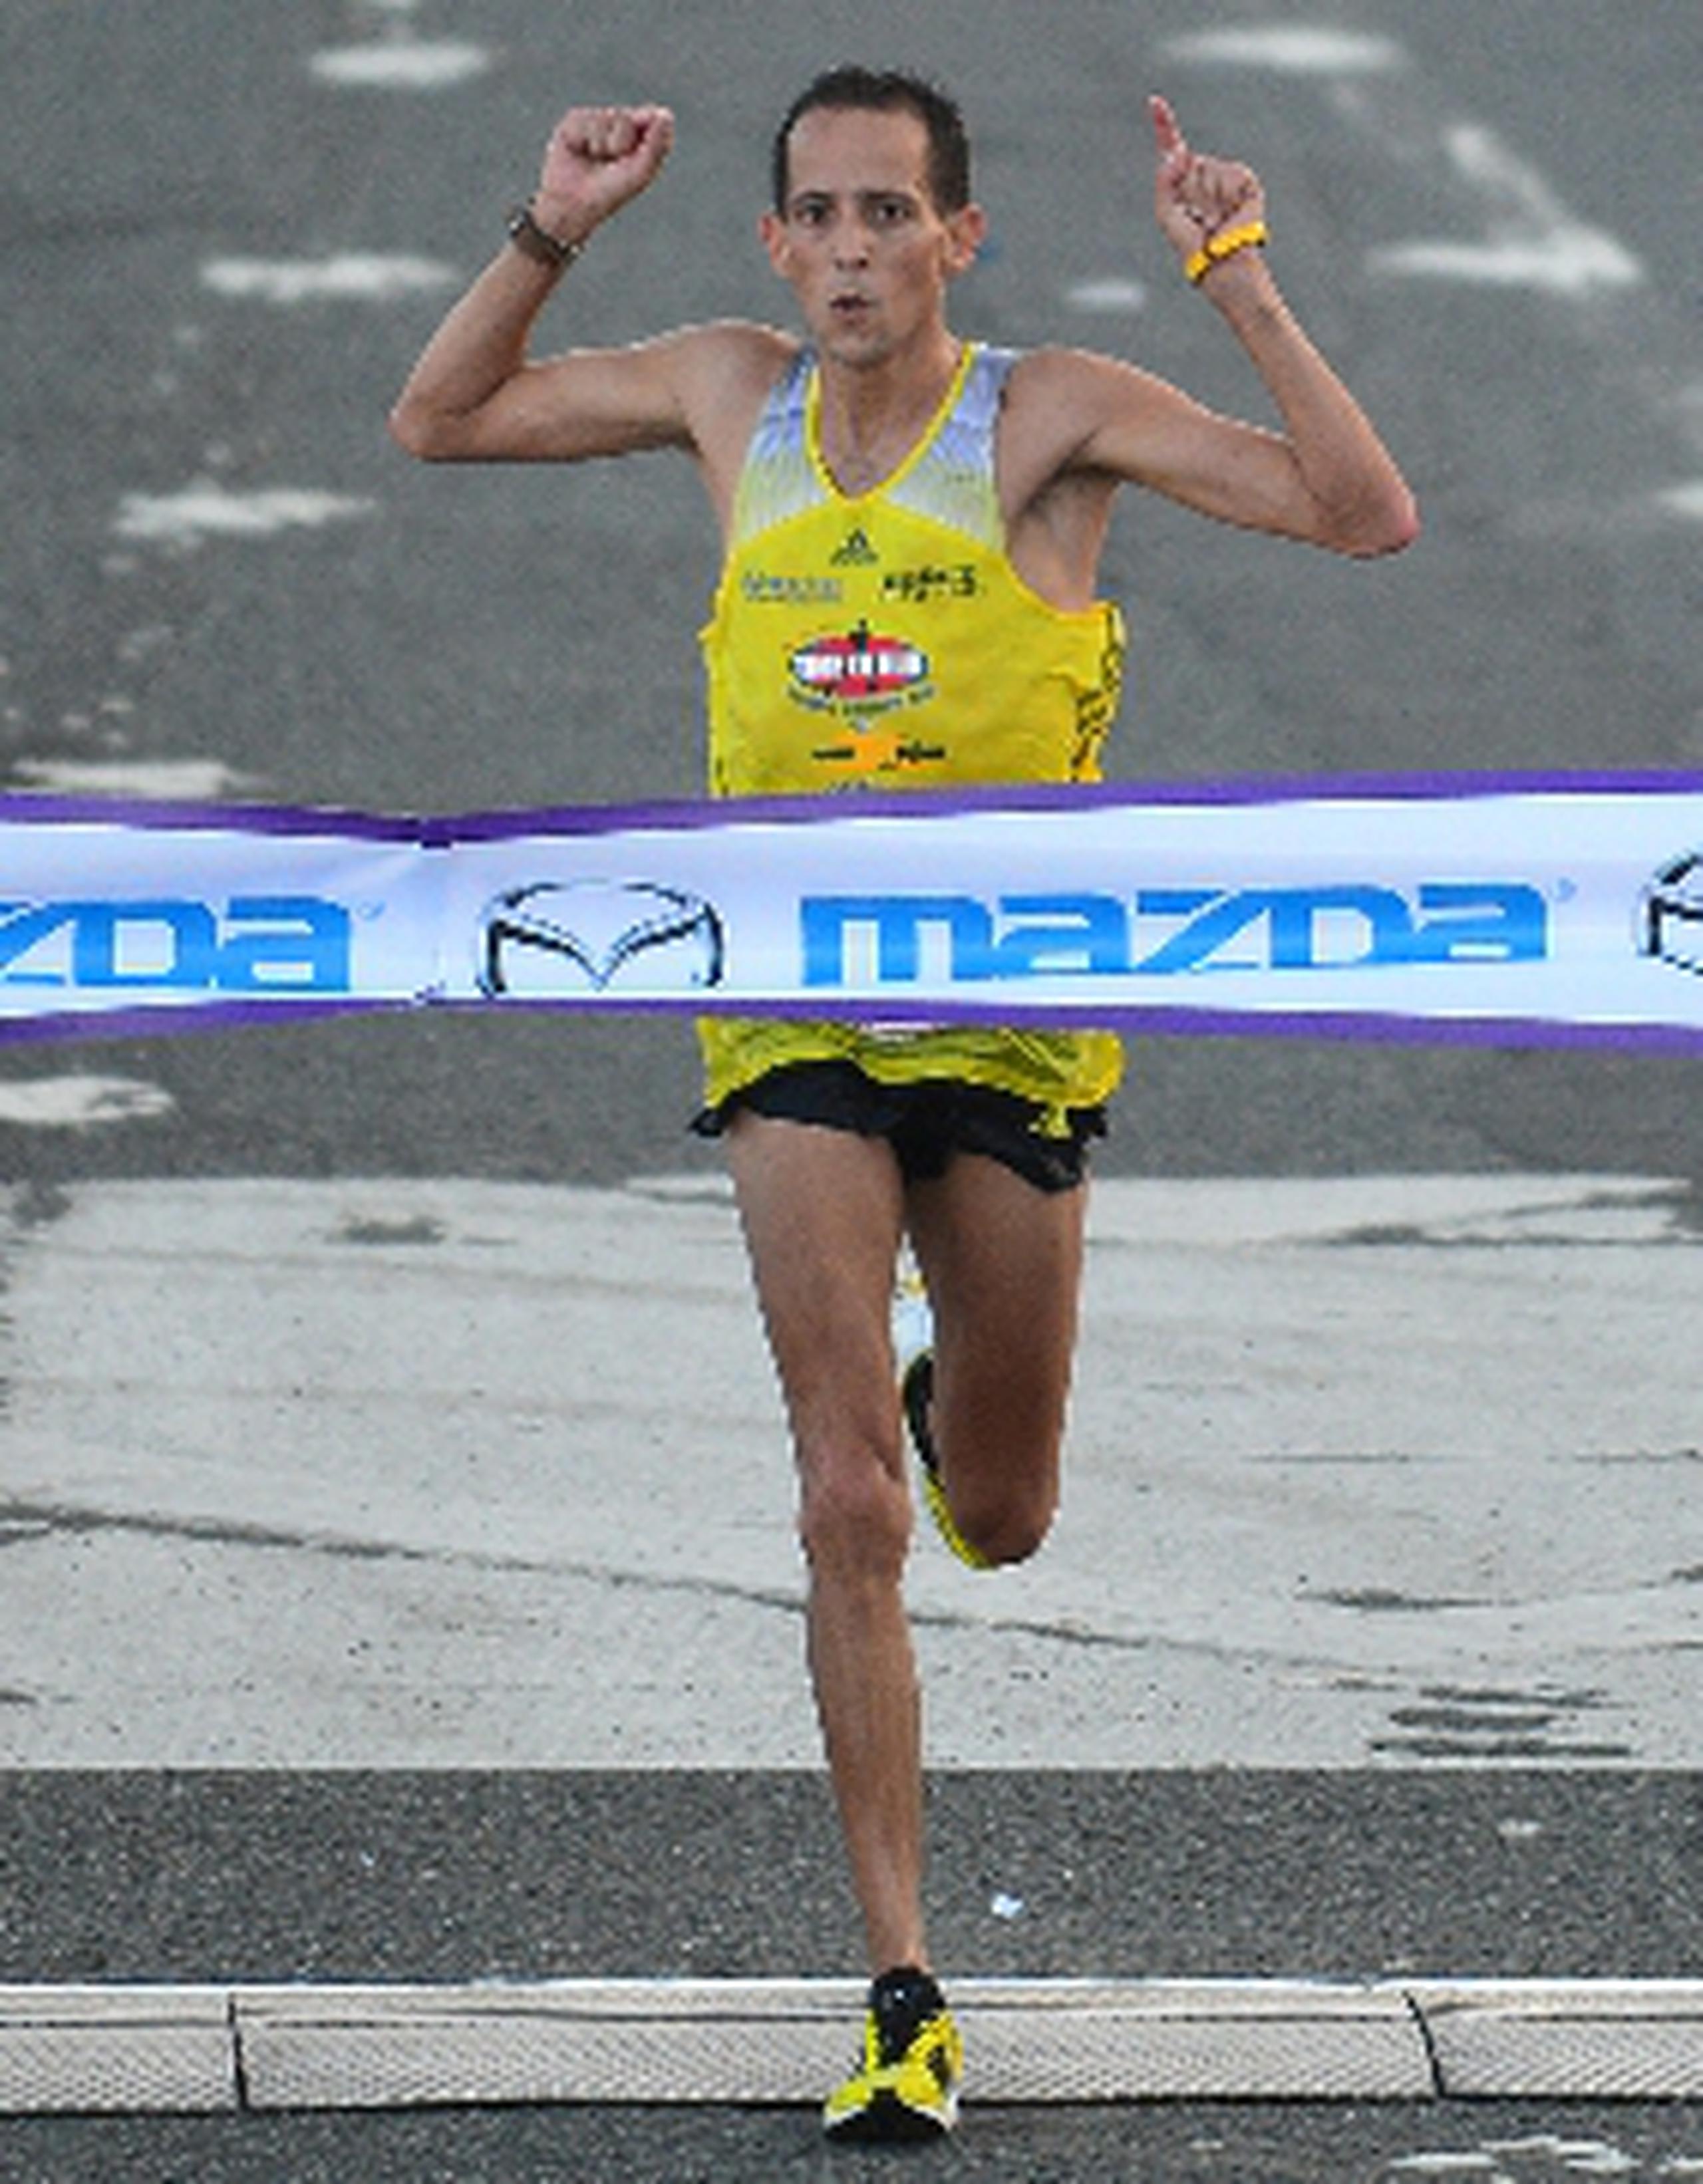 Luis Rivera levanta los brazos al cruzar la meta en el puente Teodoro Moscoso.&nbsp;<font color="yellow">(luis.alcaladelolmo@gfrmedia.com)</font>